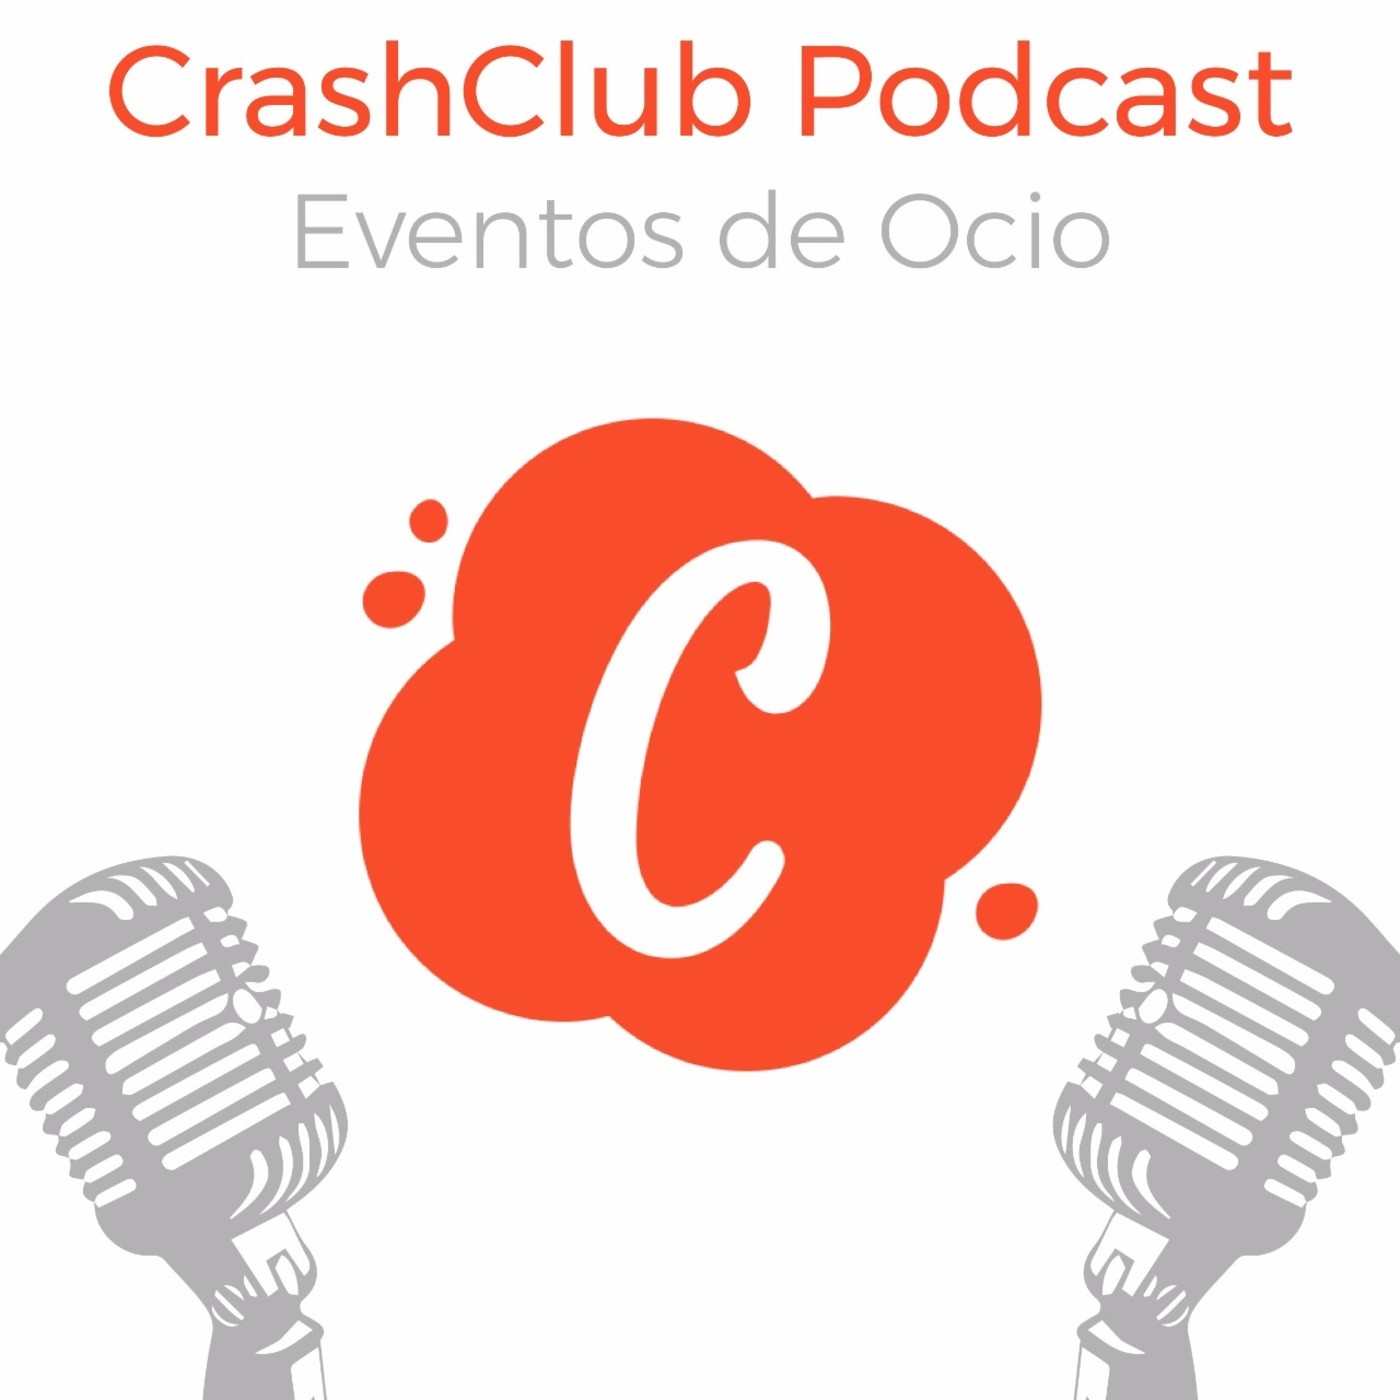 CrashClub Podcast